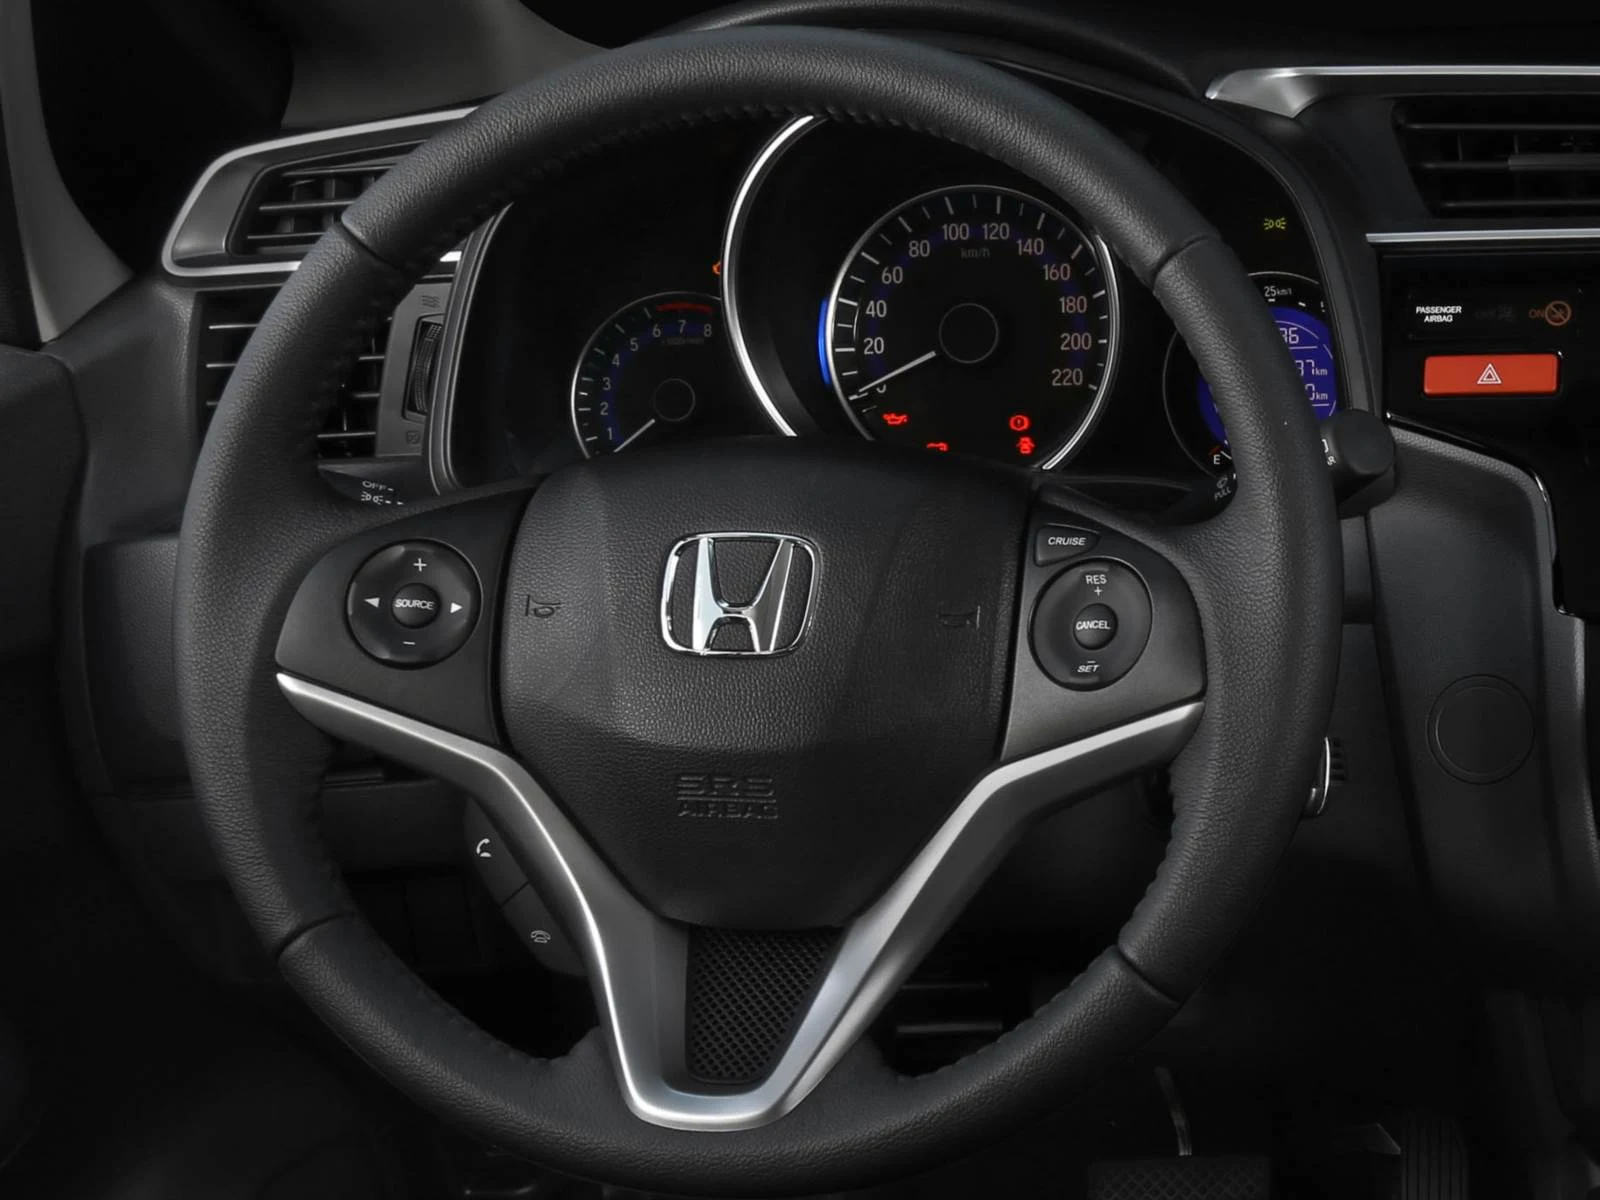 Novo Honda Fit 2015 - painel de instrumentos